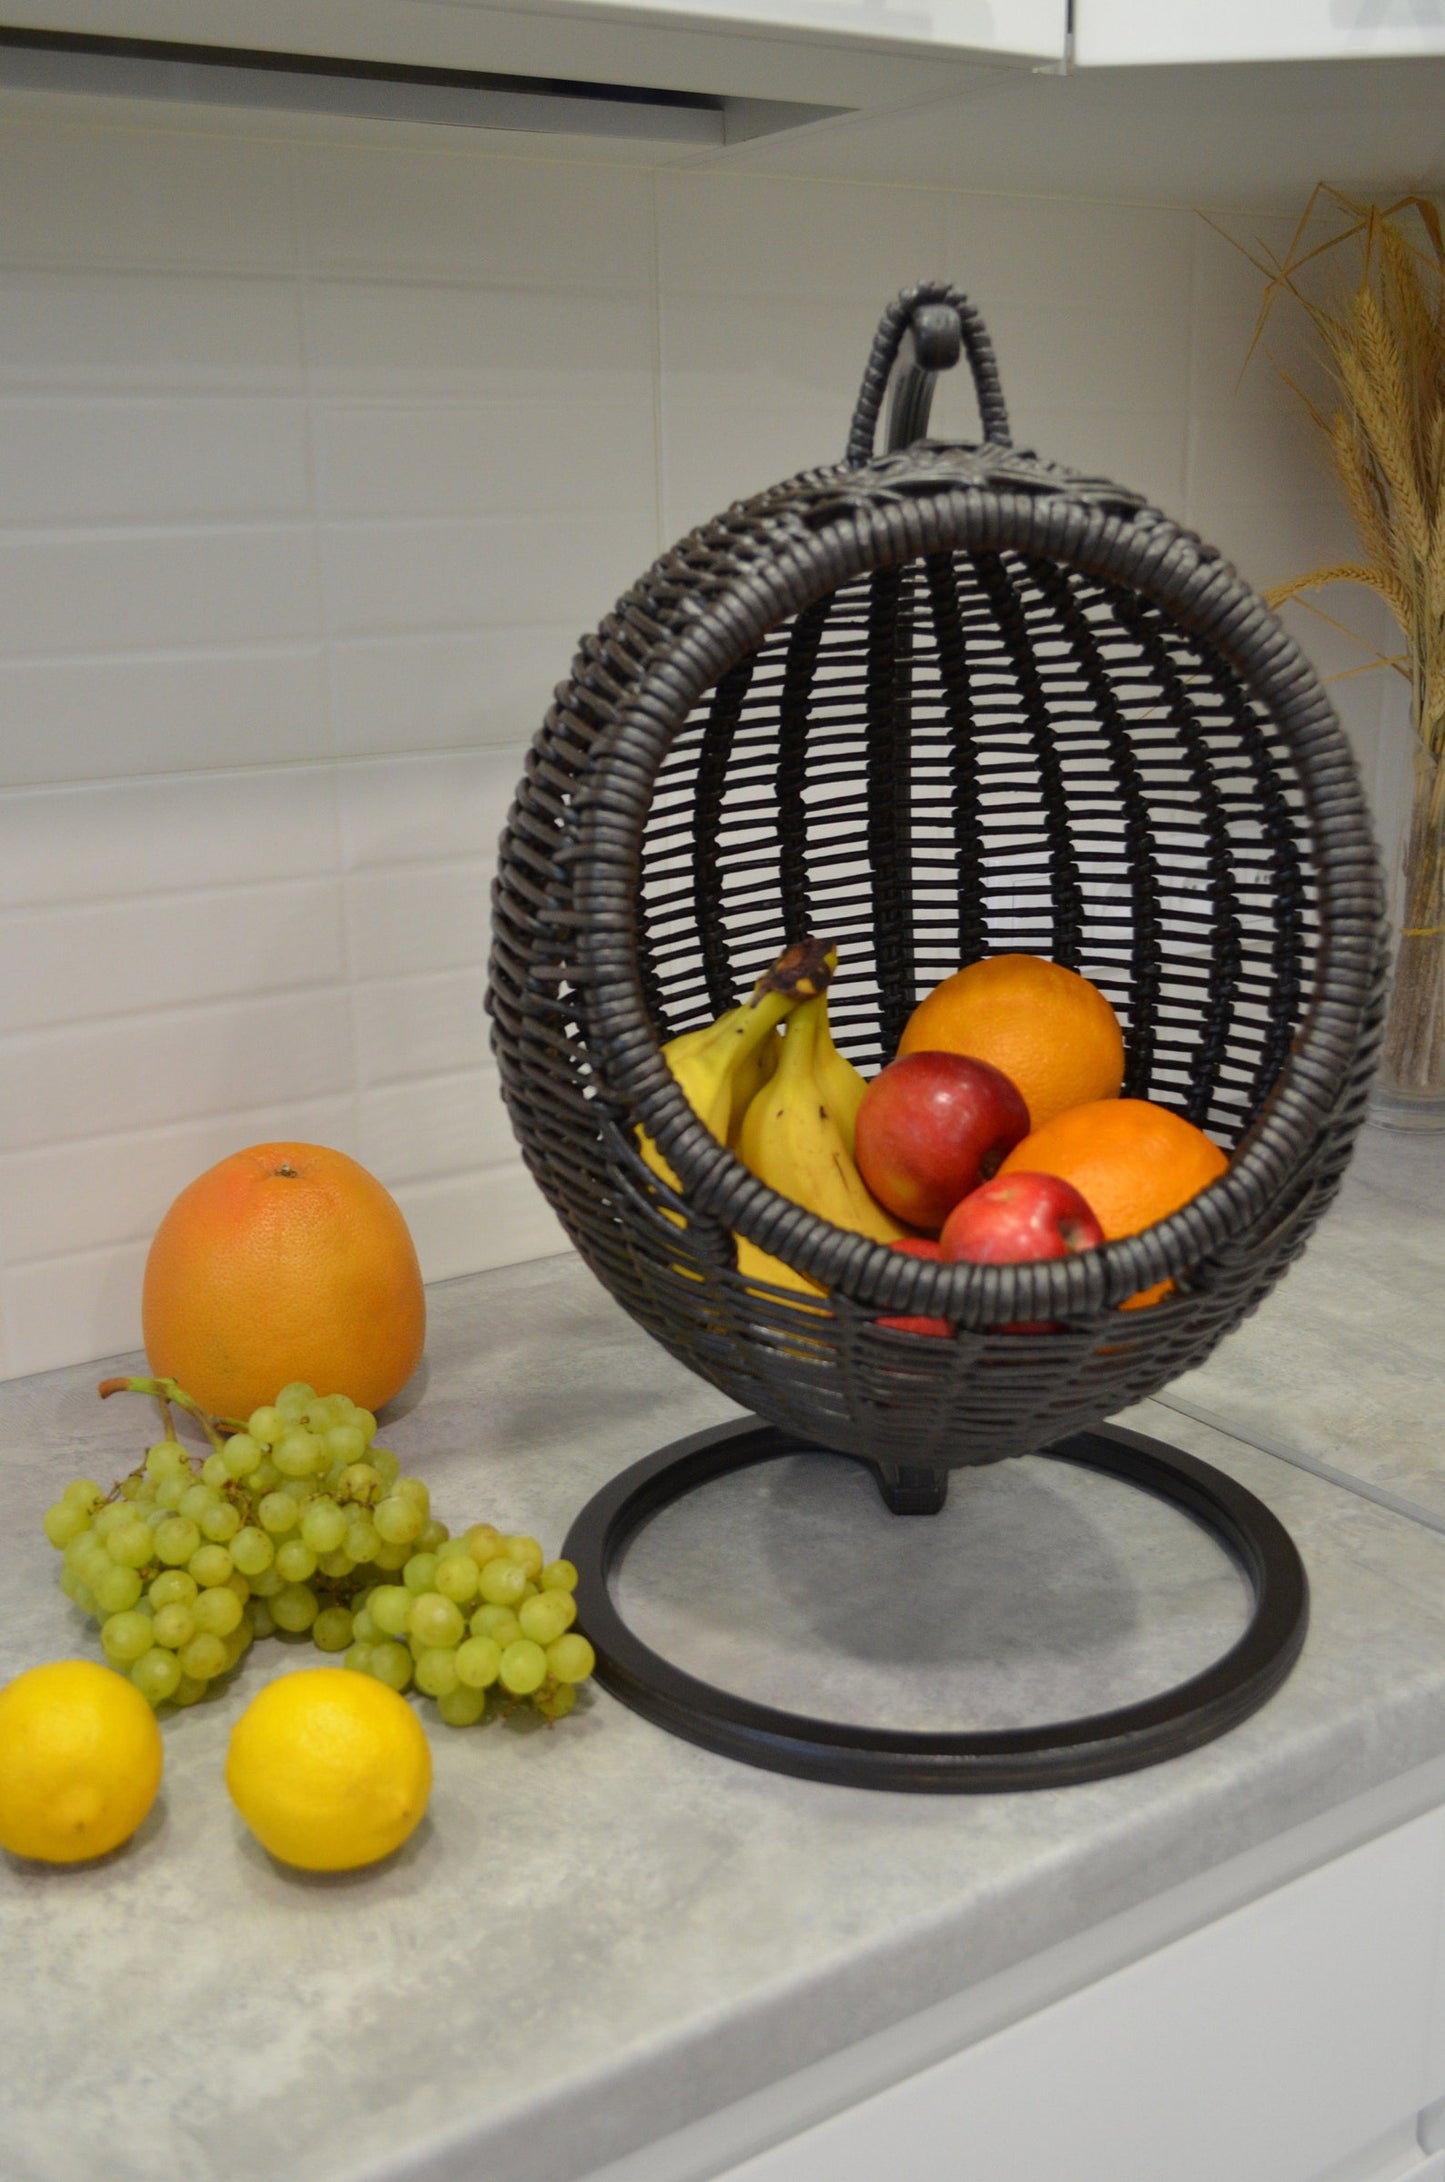 果物や野菜を収納するフルーツバスケット 枝編み細工 丸型 ダークチョコレート